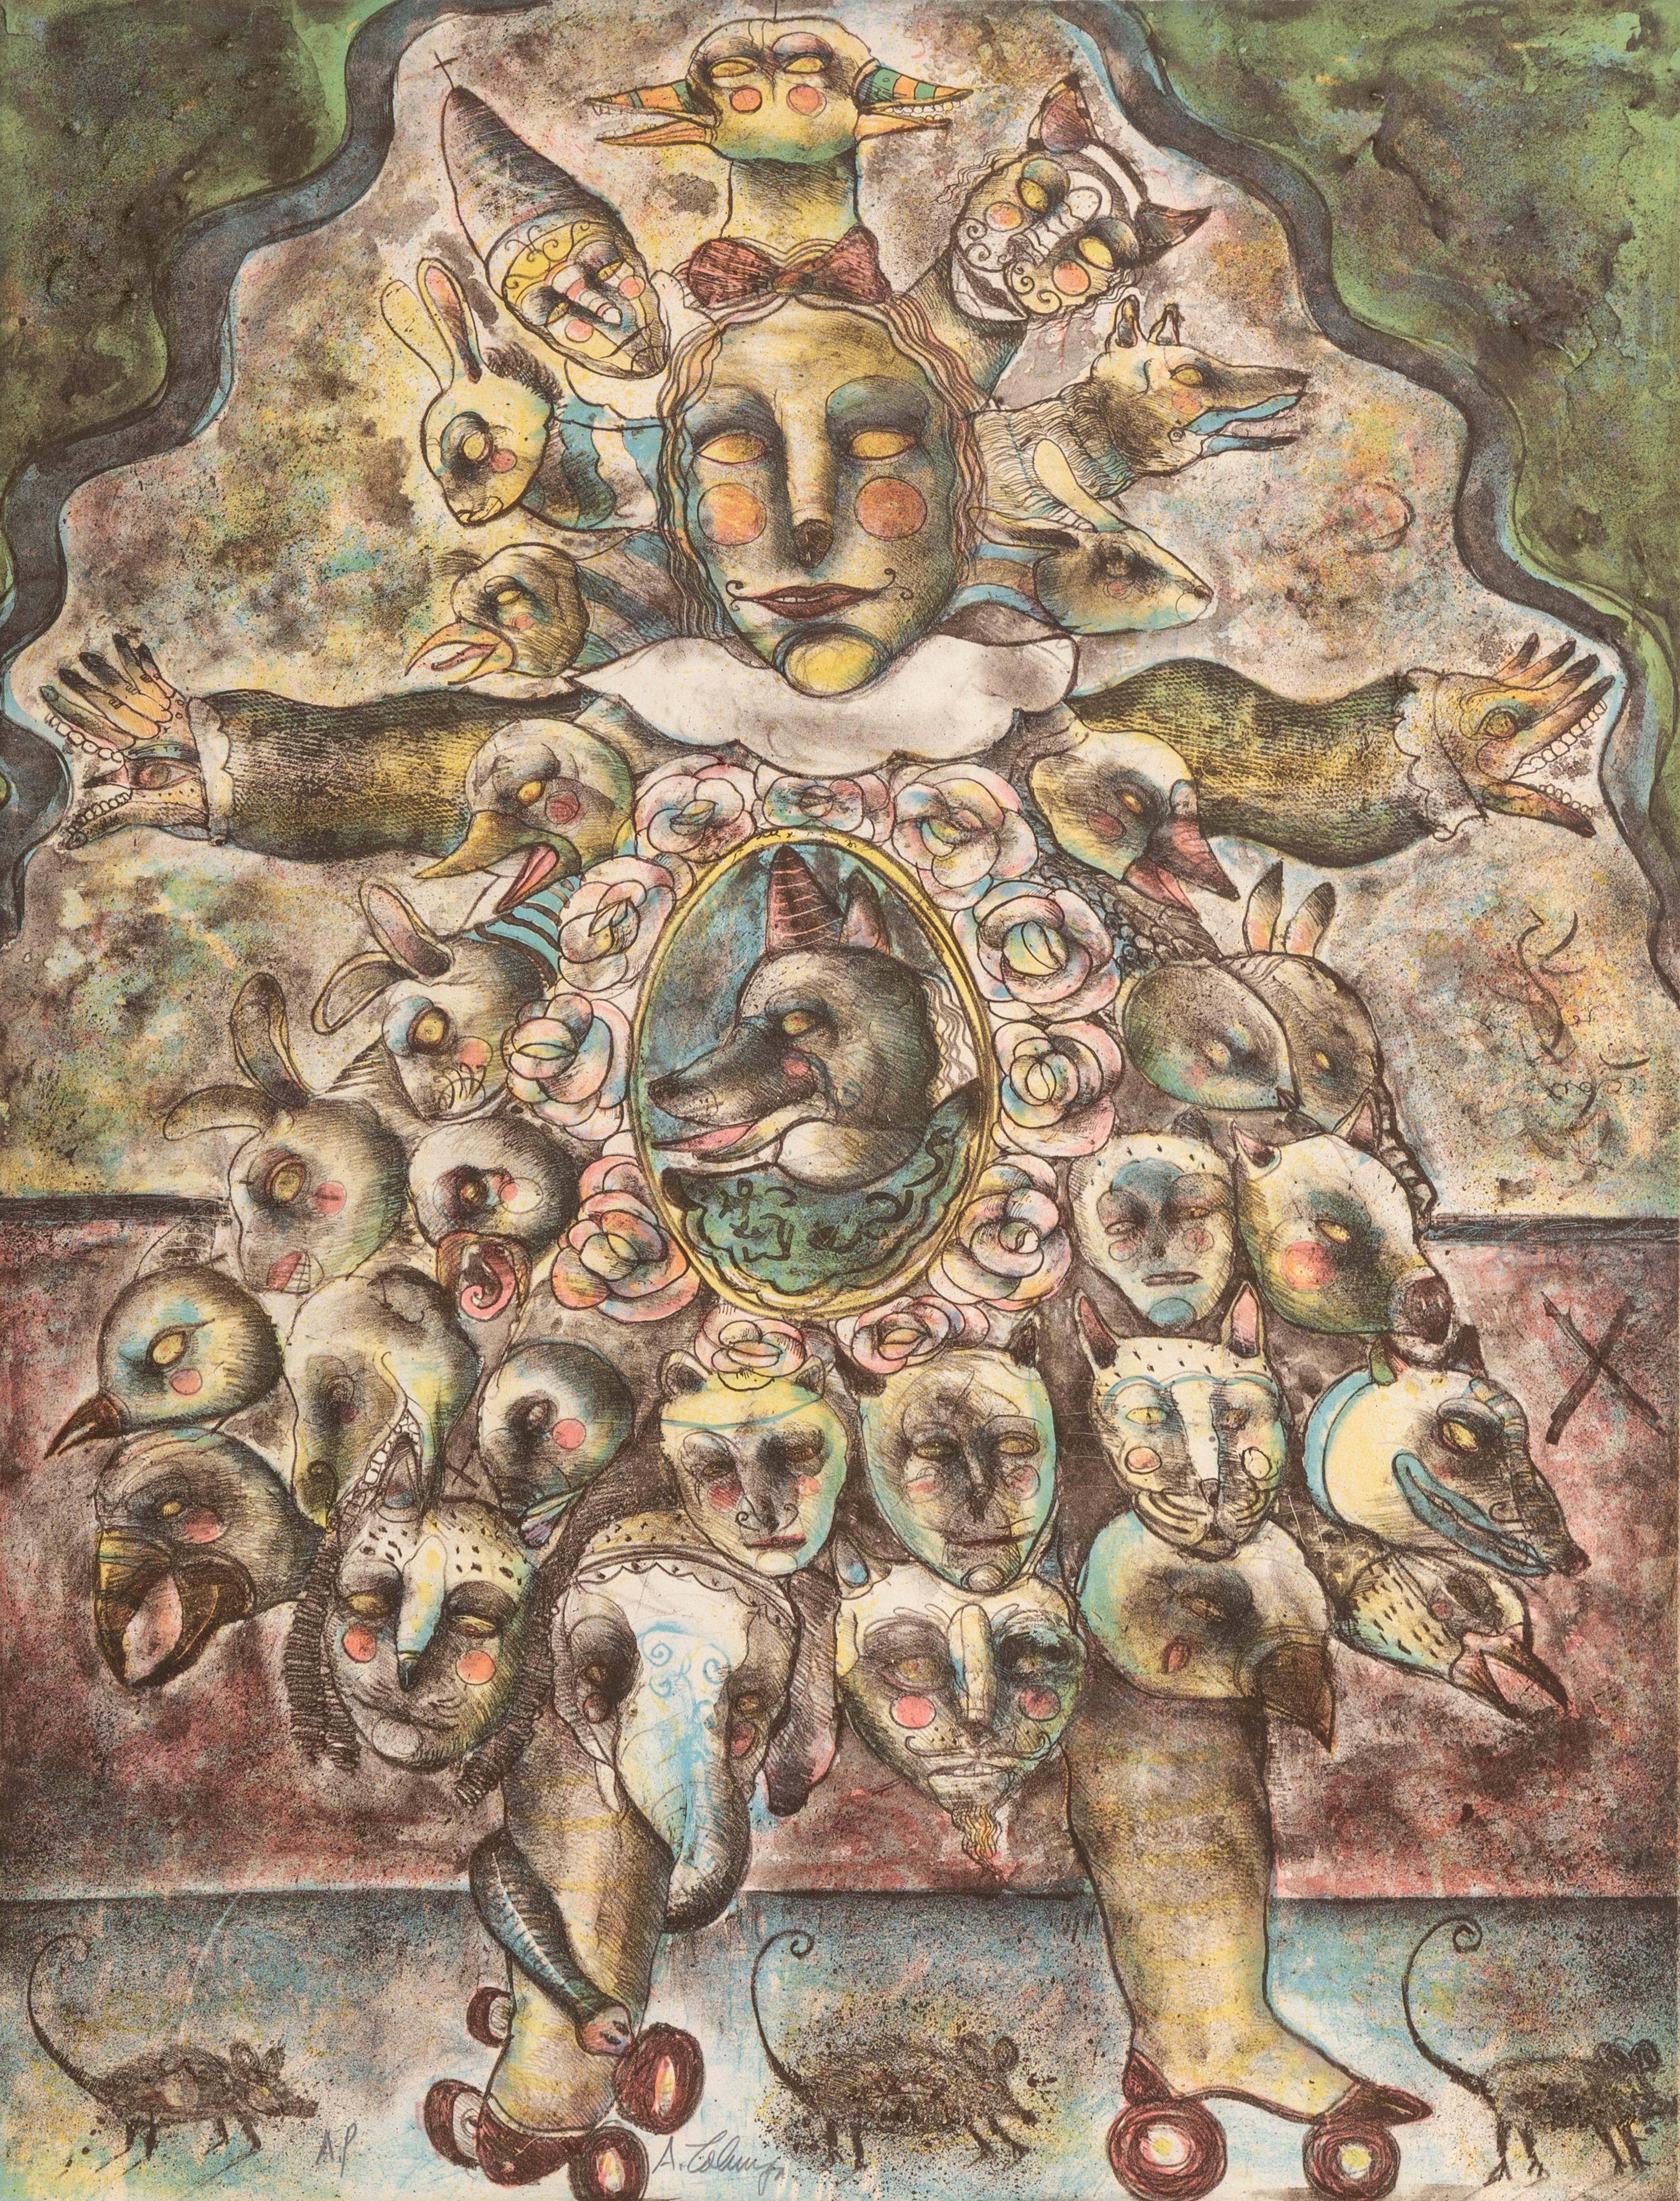 Künstler: Alejandro Colunga, Mexikaner (1948 - )
Titel: Nina con Vestido de Animalitos
Jahr: 1979
Medium: Lithographie auf Arches, signiert und nummeriert mit Bleistift
Auflage: 110, AP
Größe: 30 x 22 Zoll; 76 x 56 cm